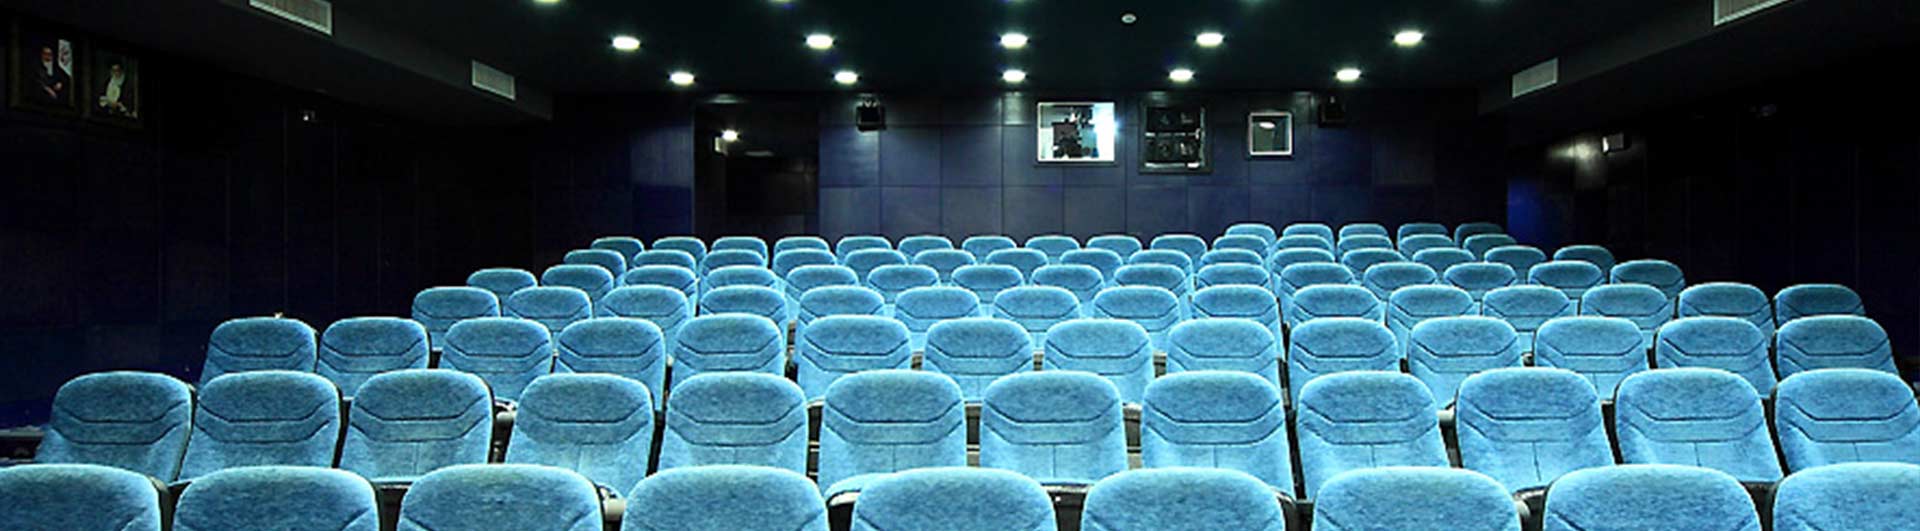 سینما برج میلاد تهران